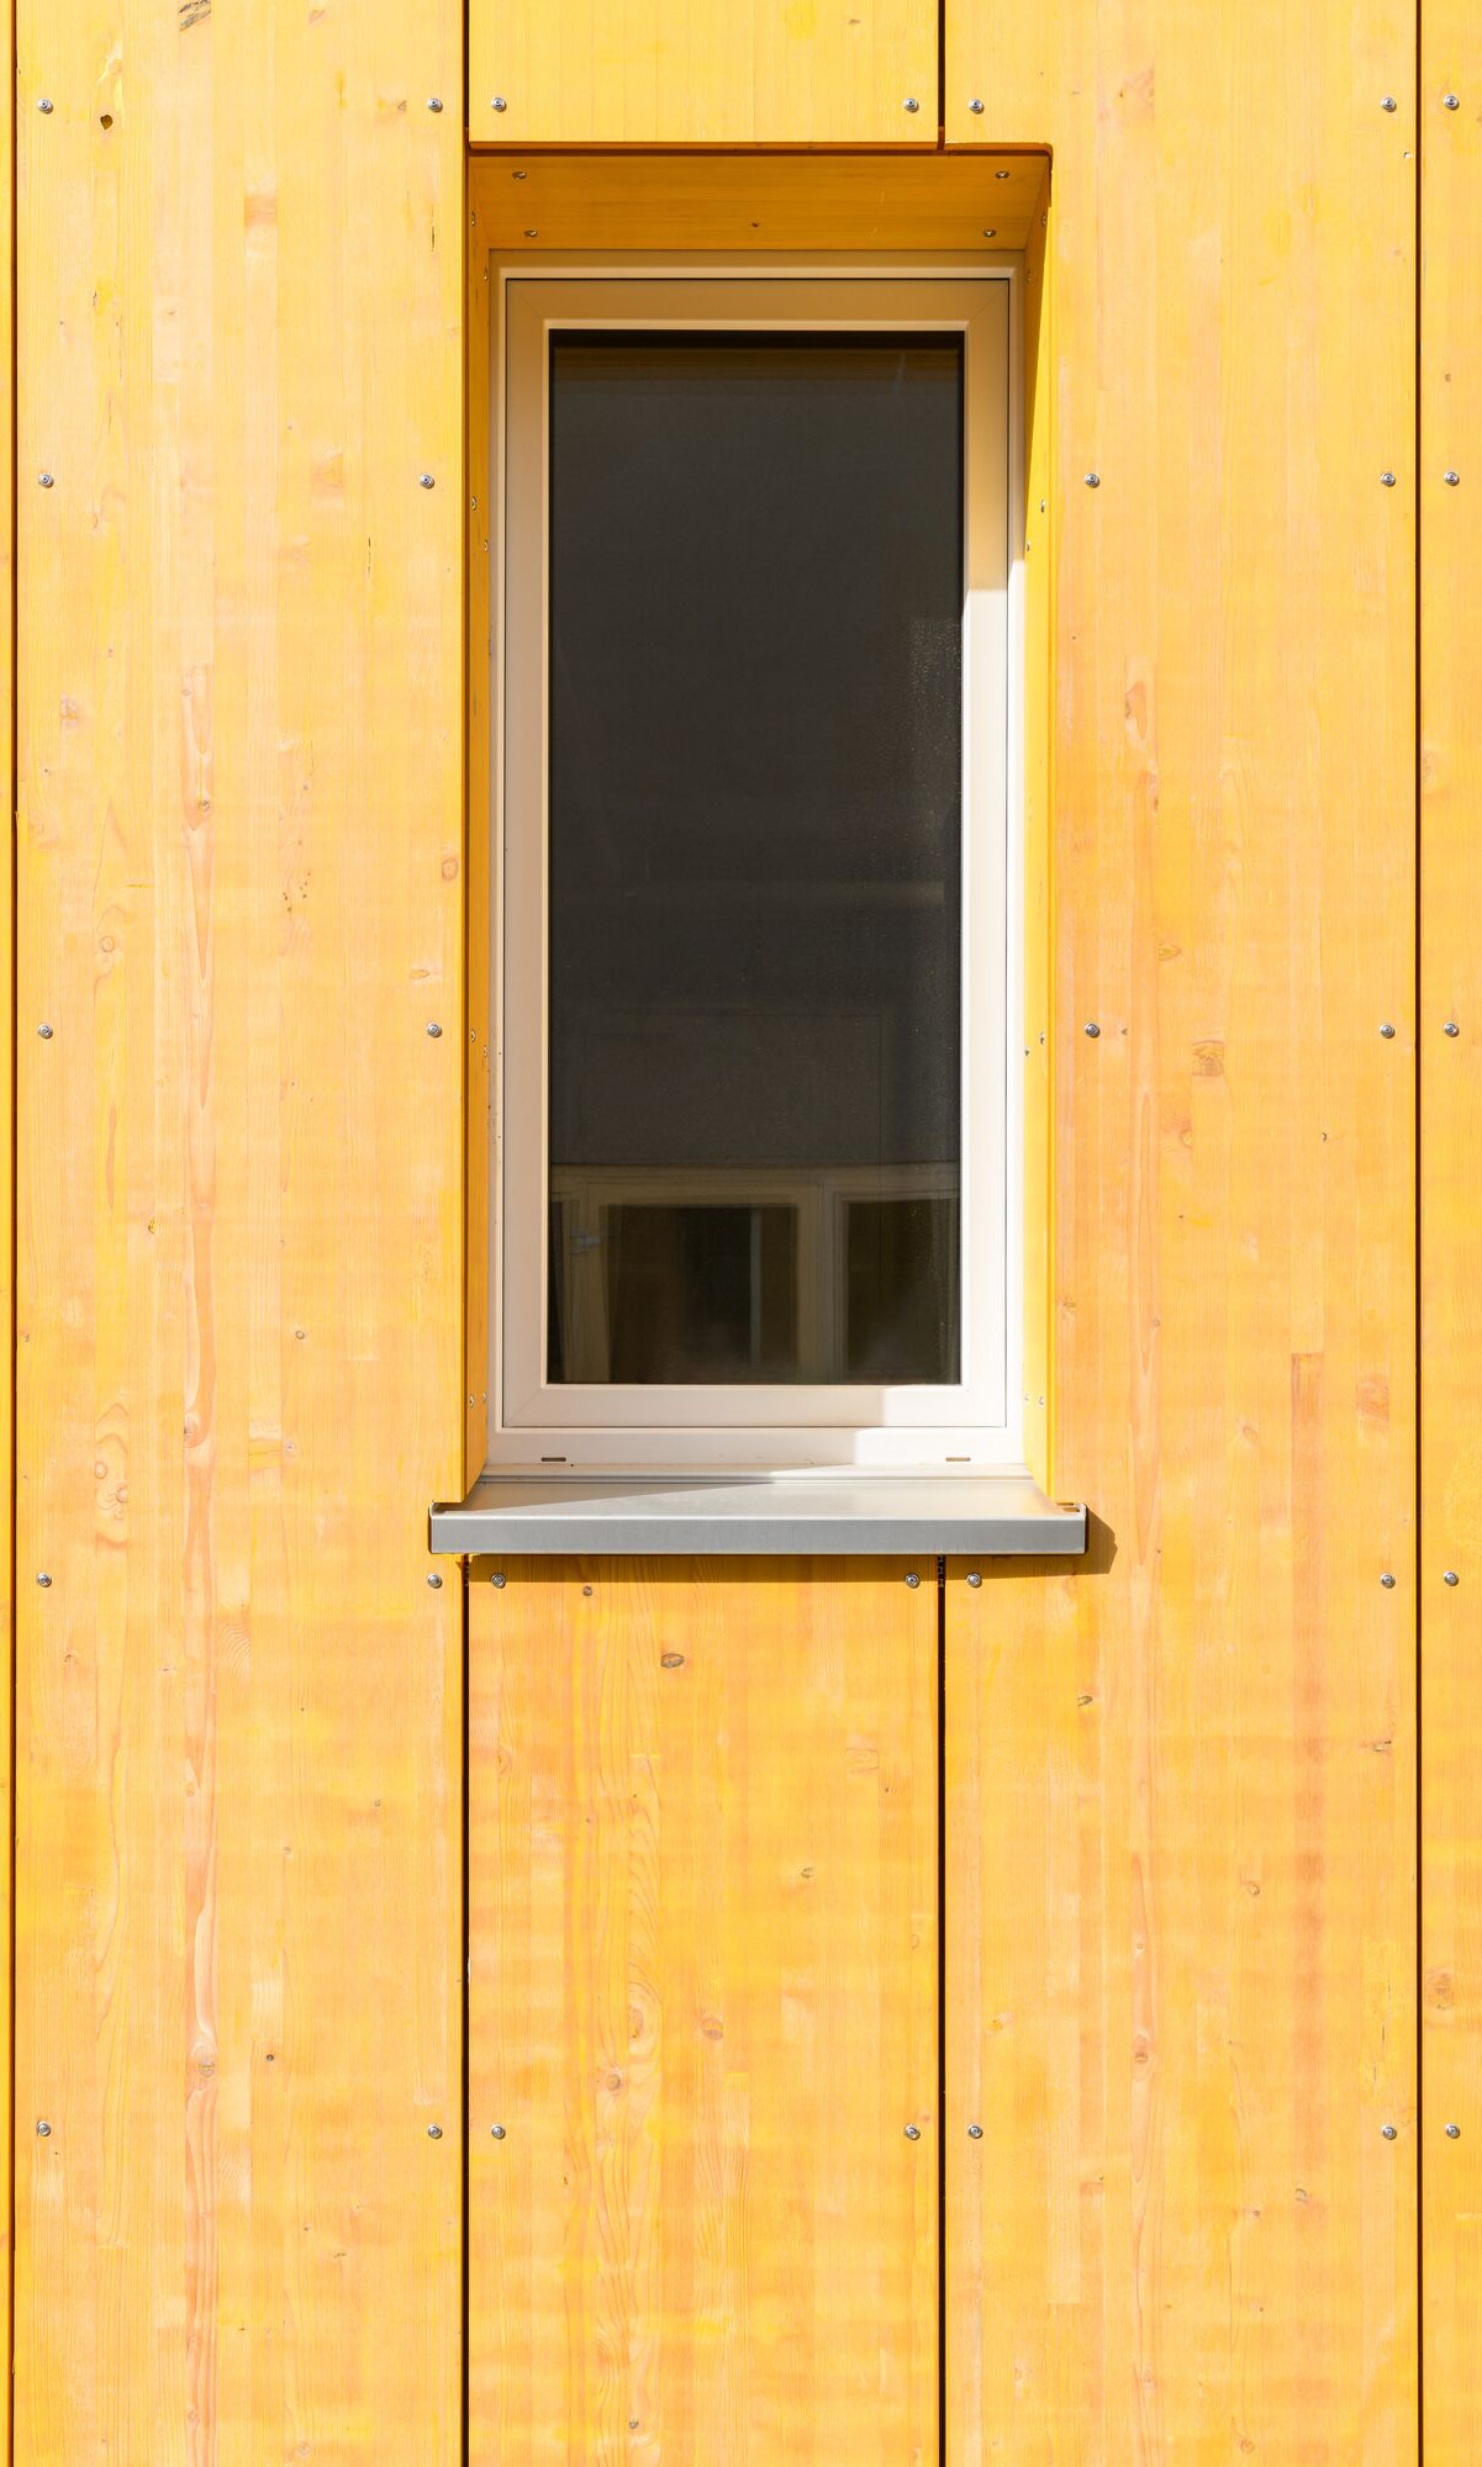 Fenster und Fassade aus gelben Schalttafeln<br/><br/>